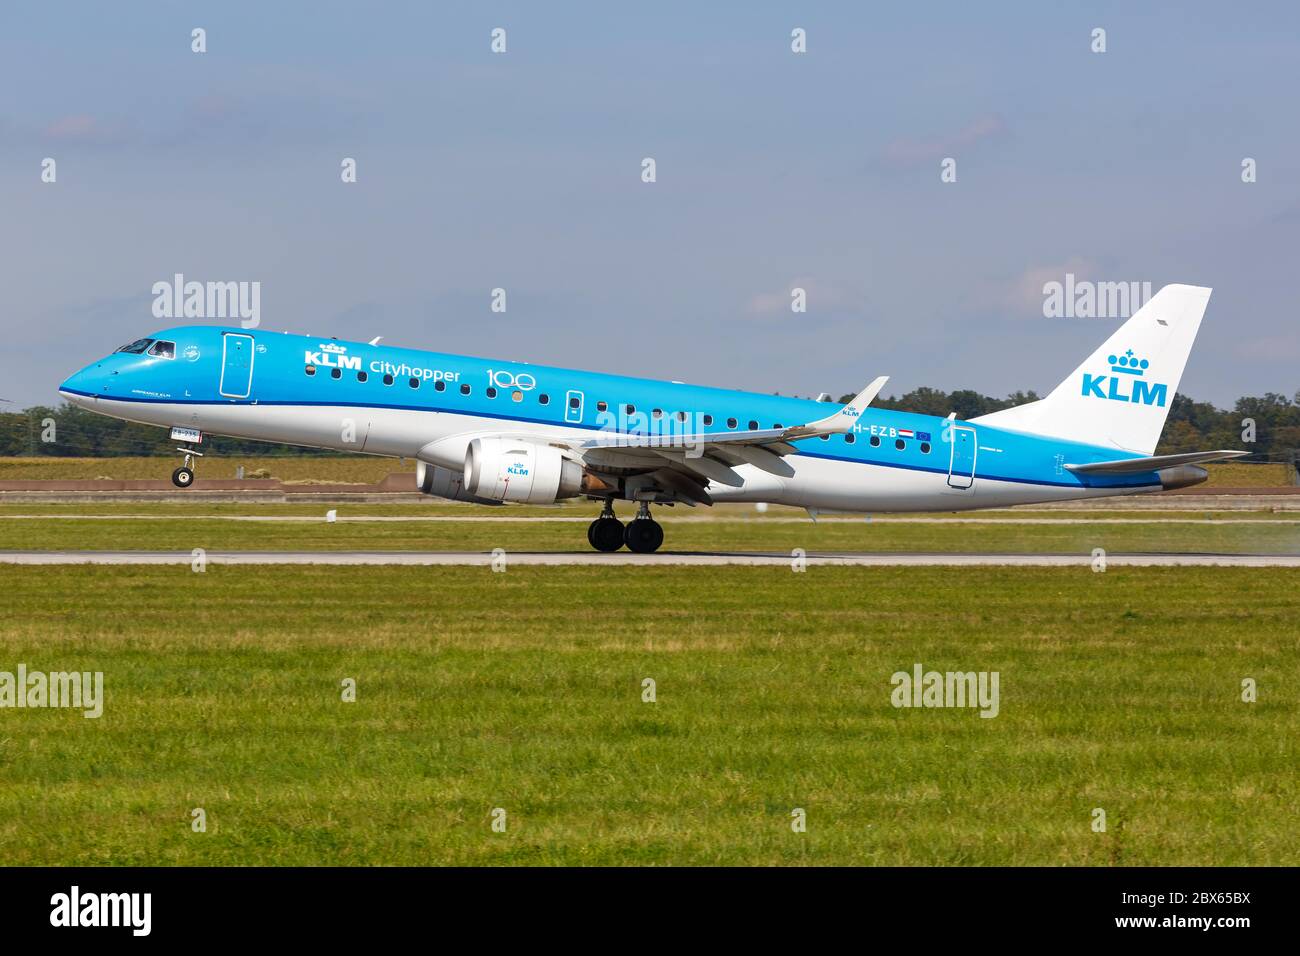 Stuttgart, Alemania - 15 de septiembre de 2019: KLM cityhopper Embraer 190 avión en el aeropuerto de Stuttgart STR en Alemania. Foto de stock